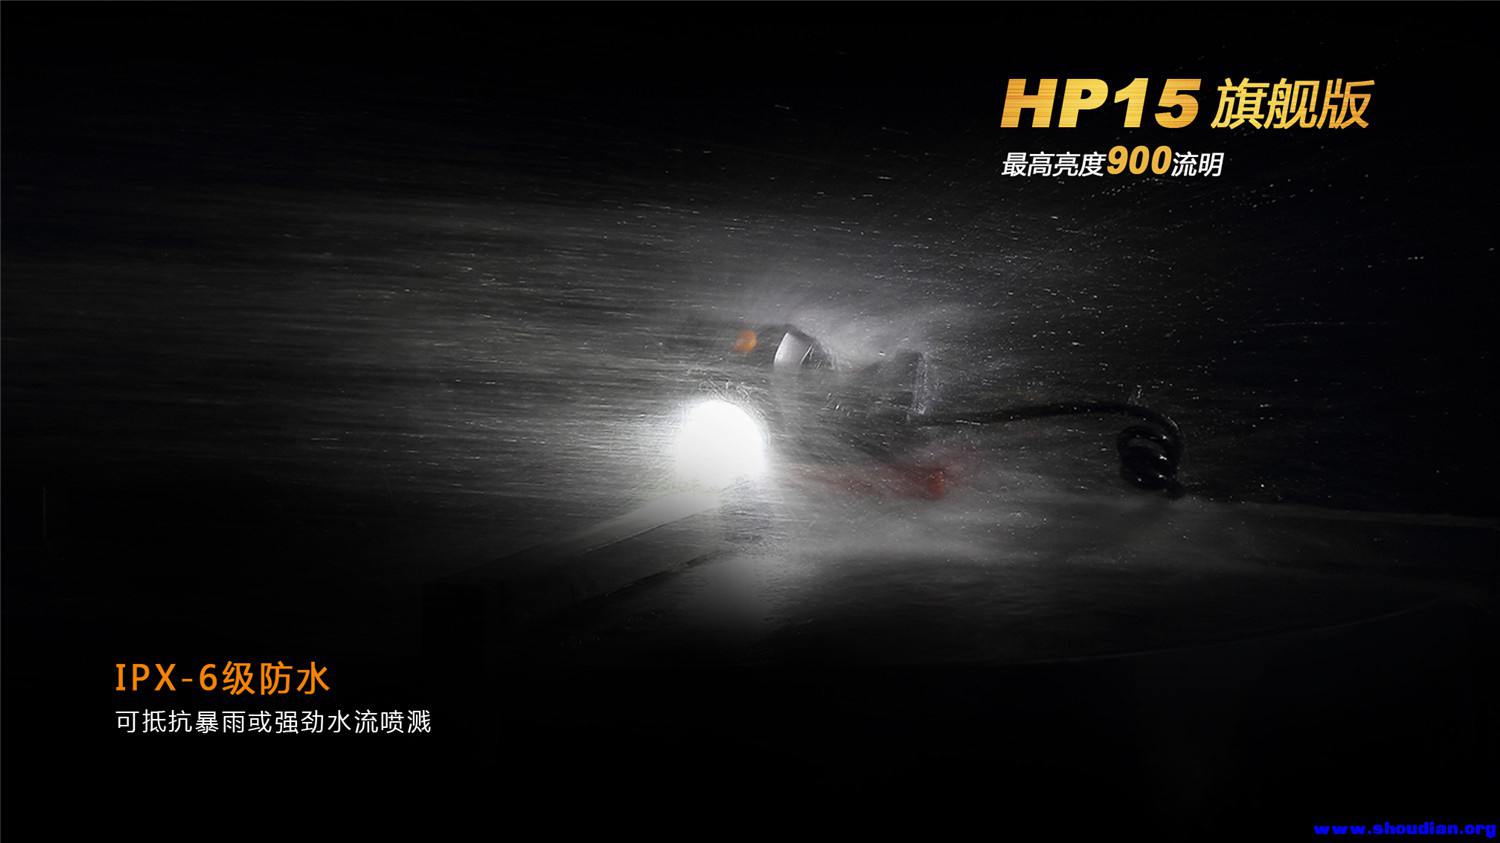 HP15-12.jpg